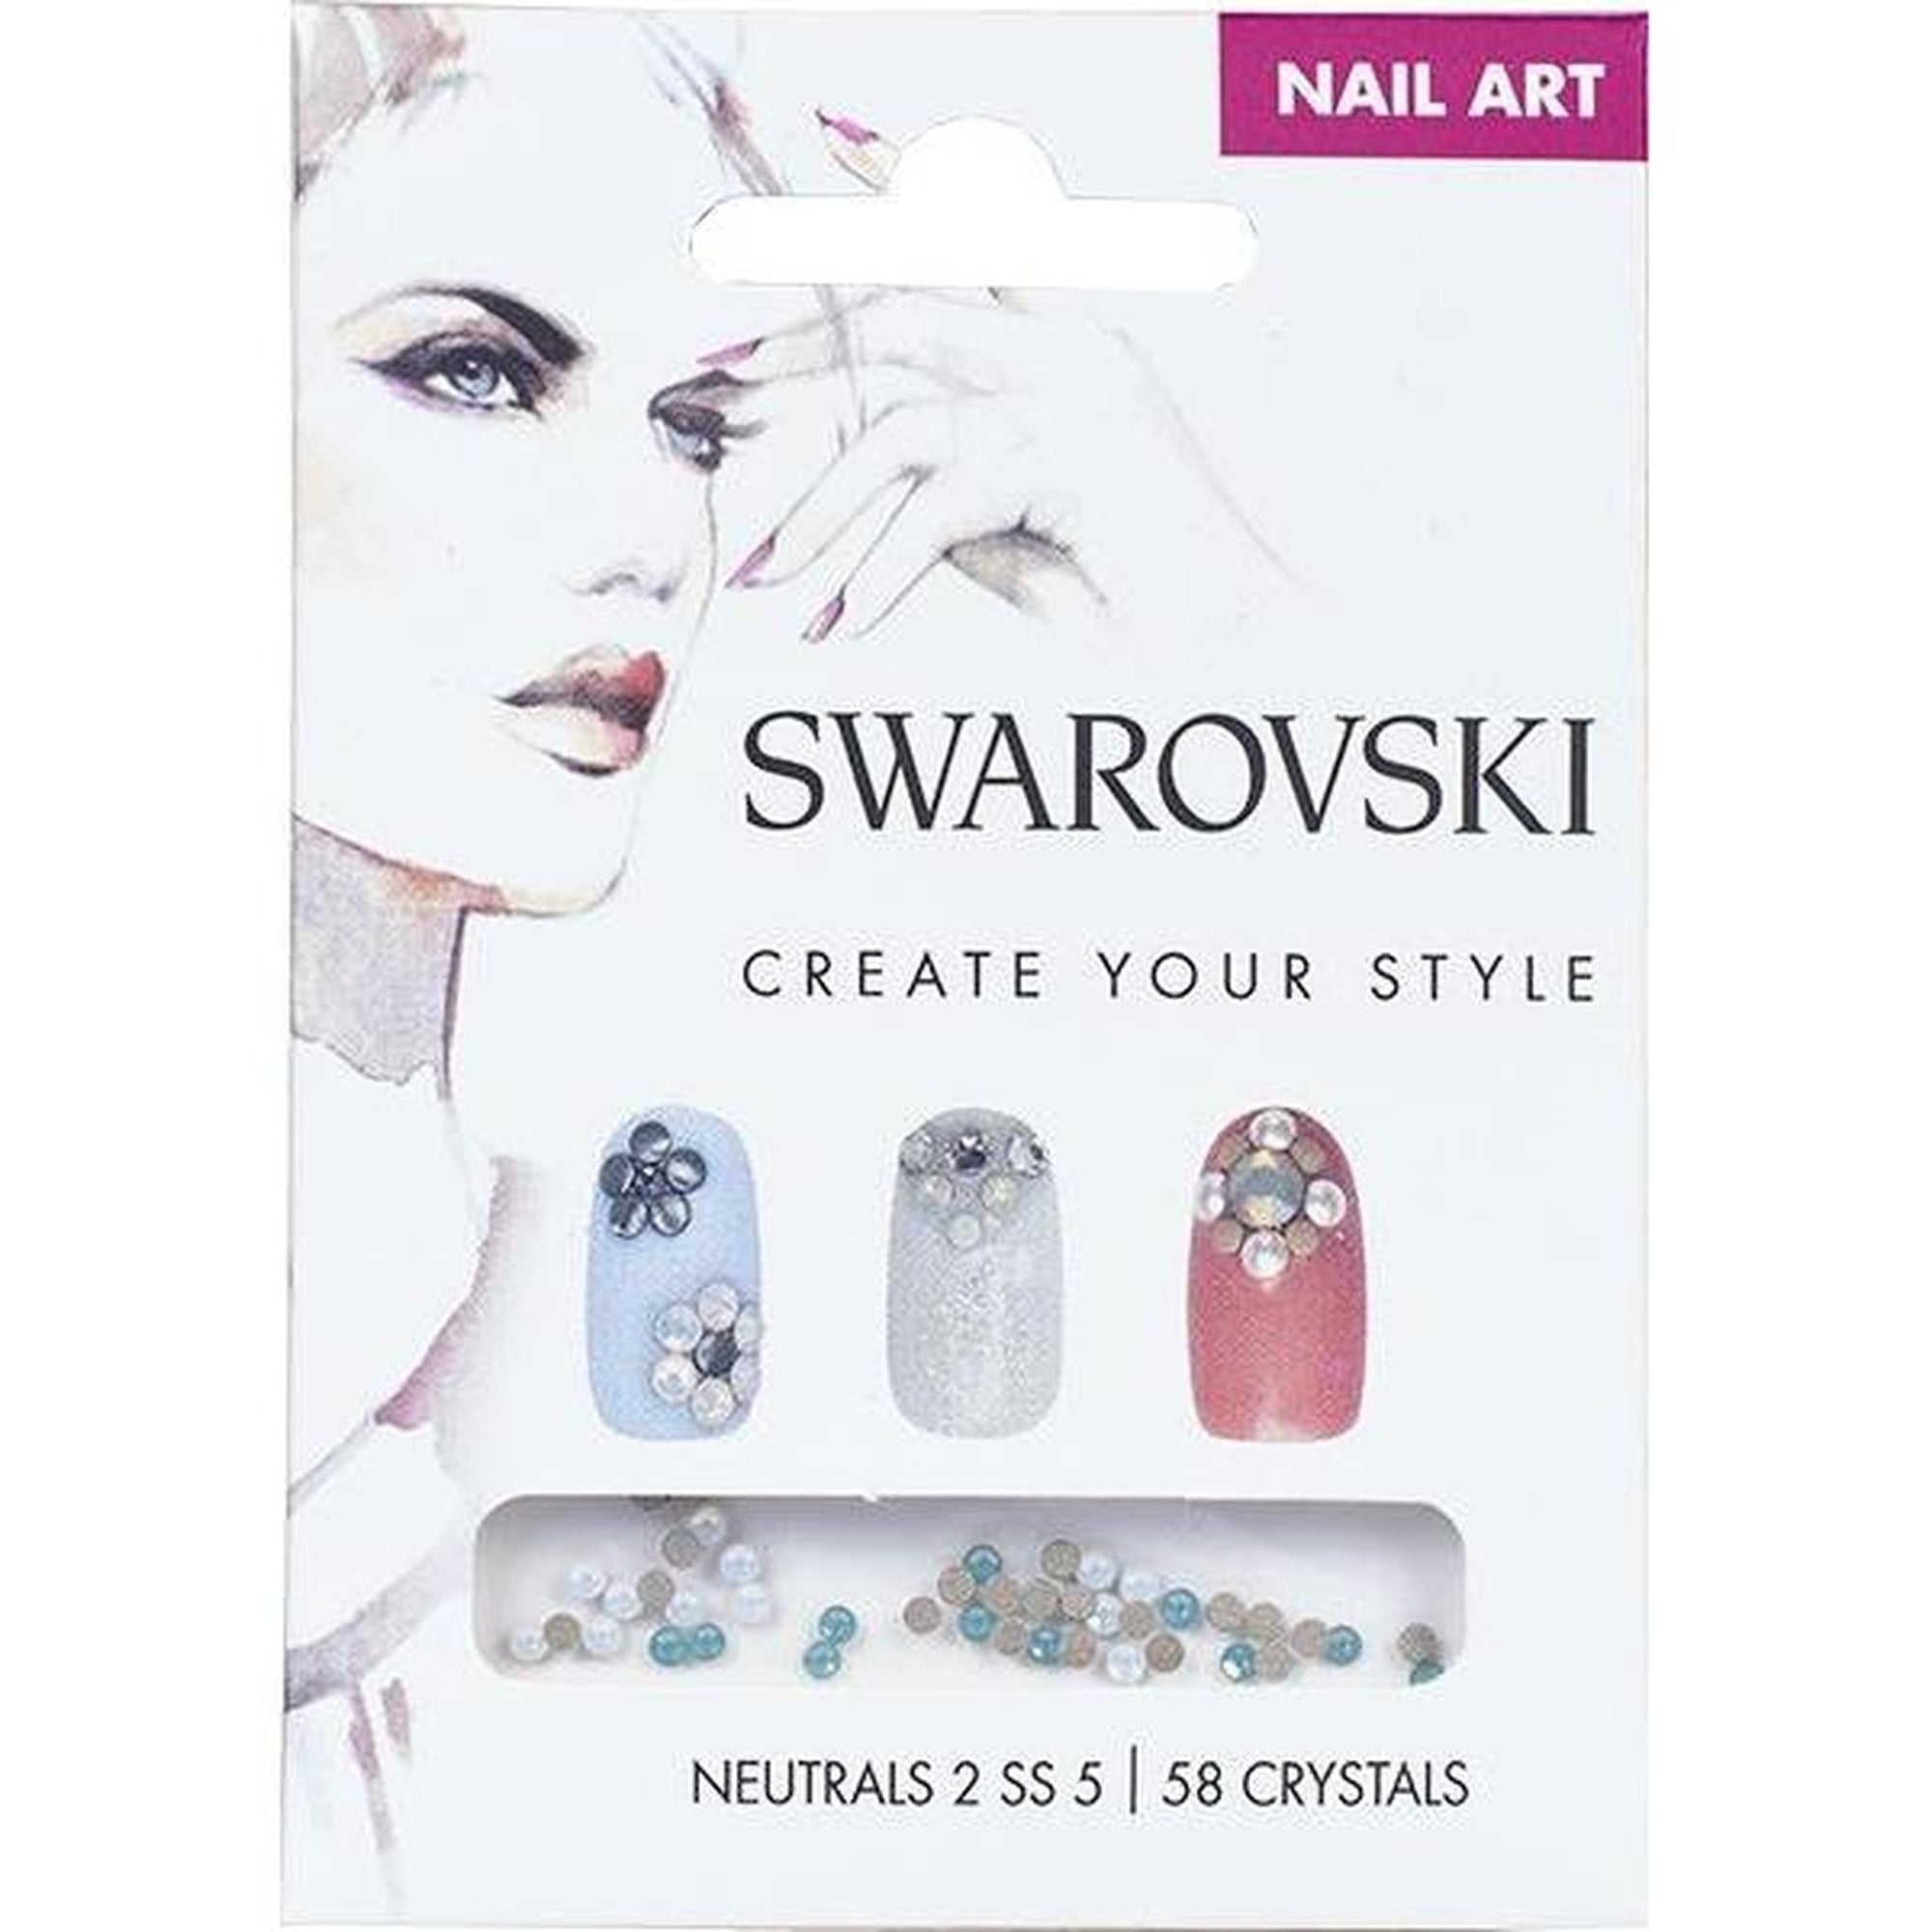 Behind the Nail Pros: Swarovski Crystal Nails 